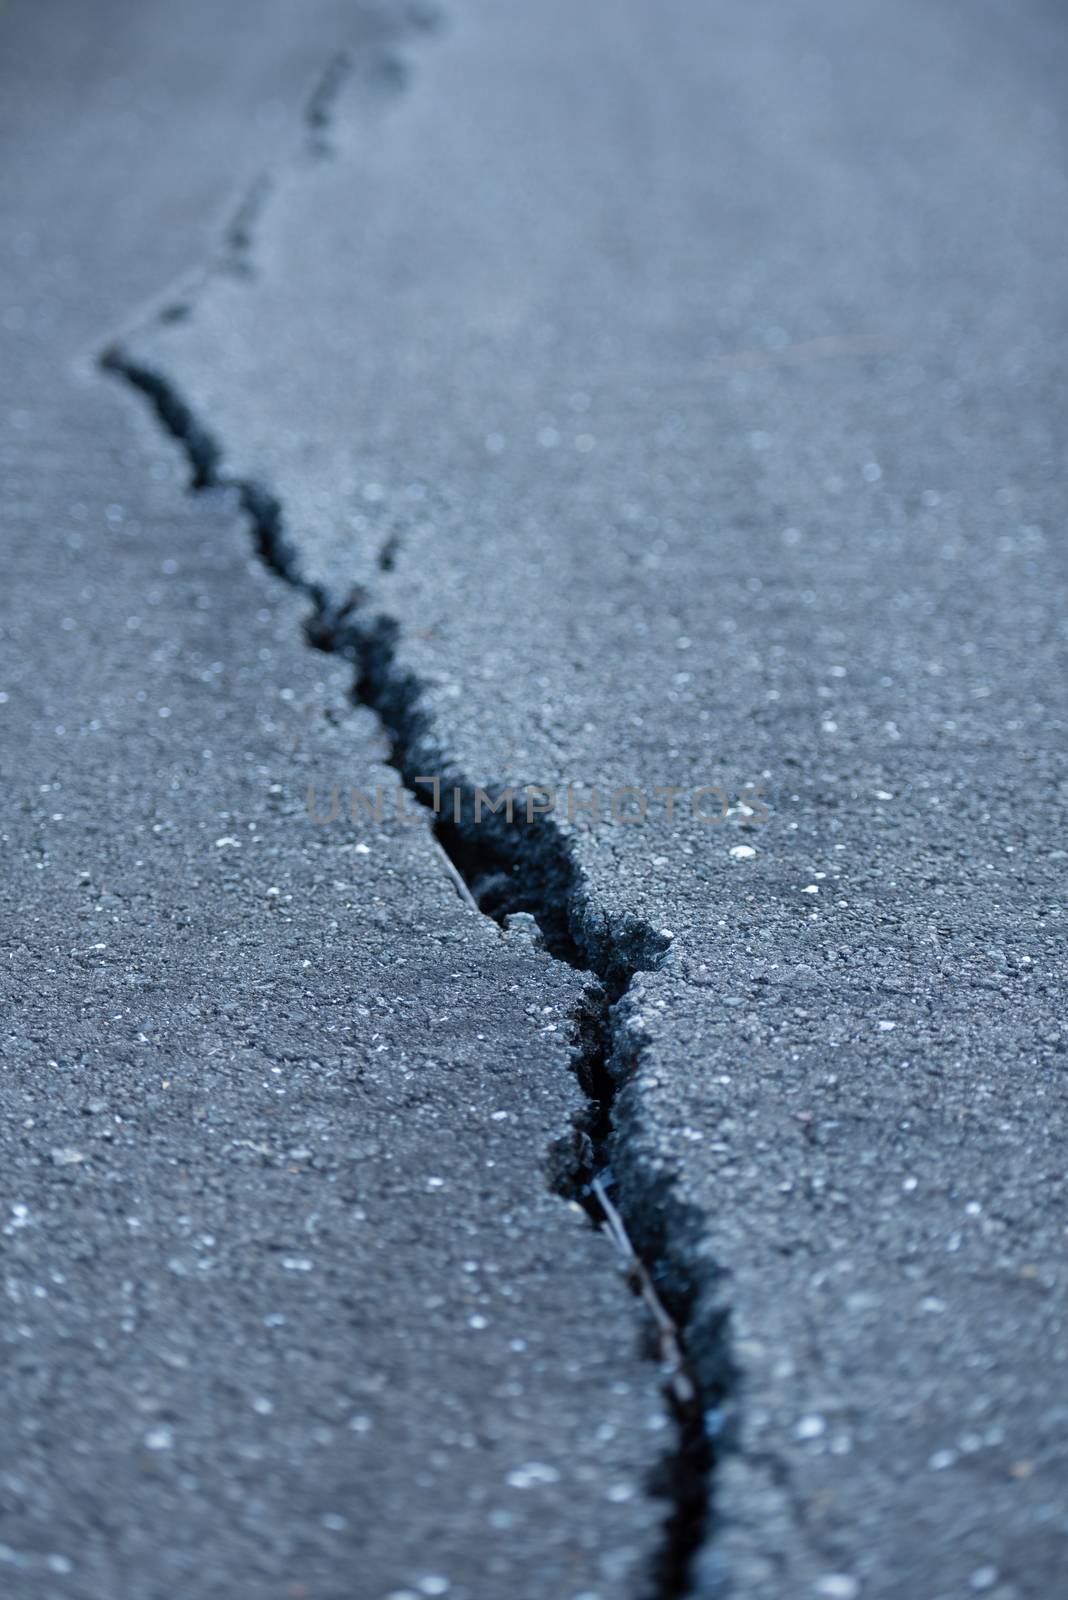 A long windy crack on a paved street.